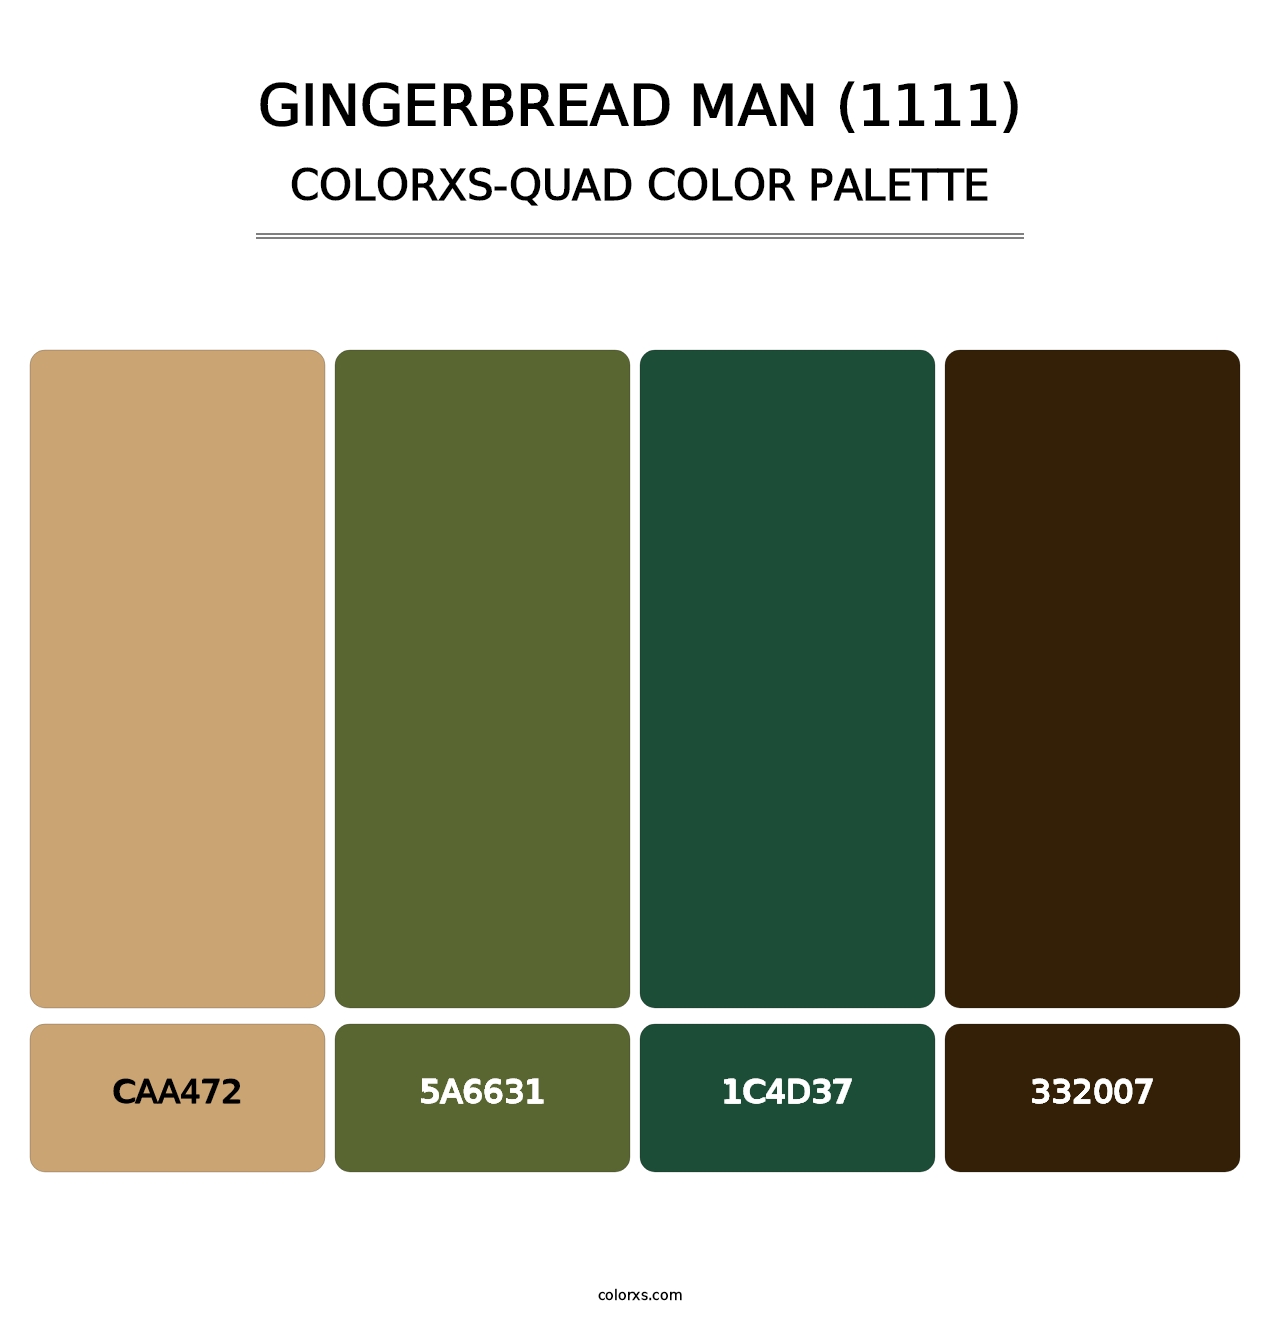 Gingerbread Man (1111) - Colorxs Quad Palette